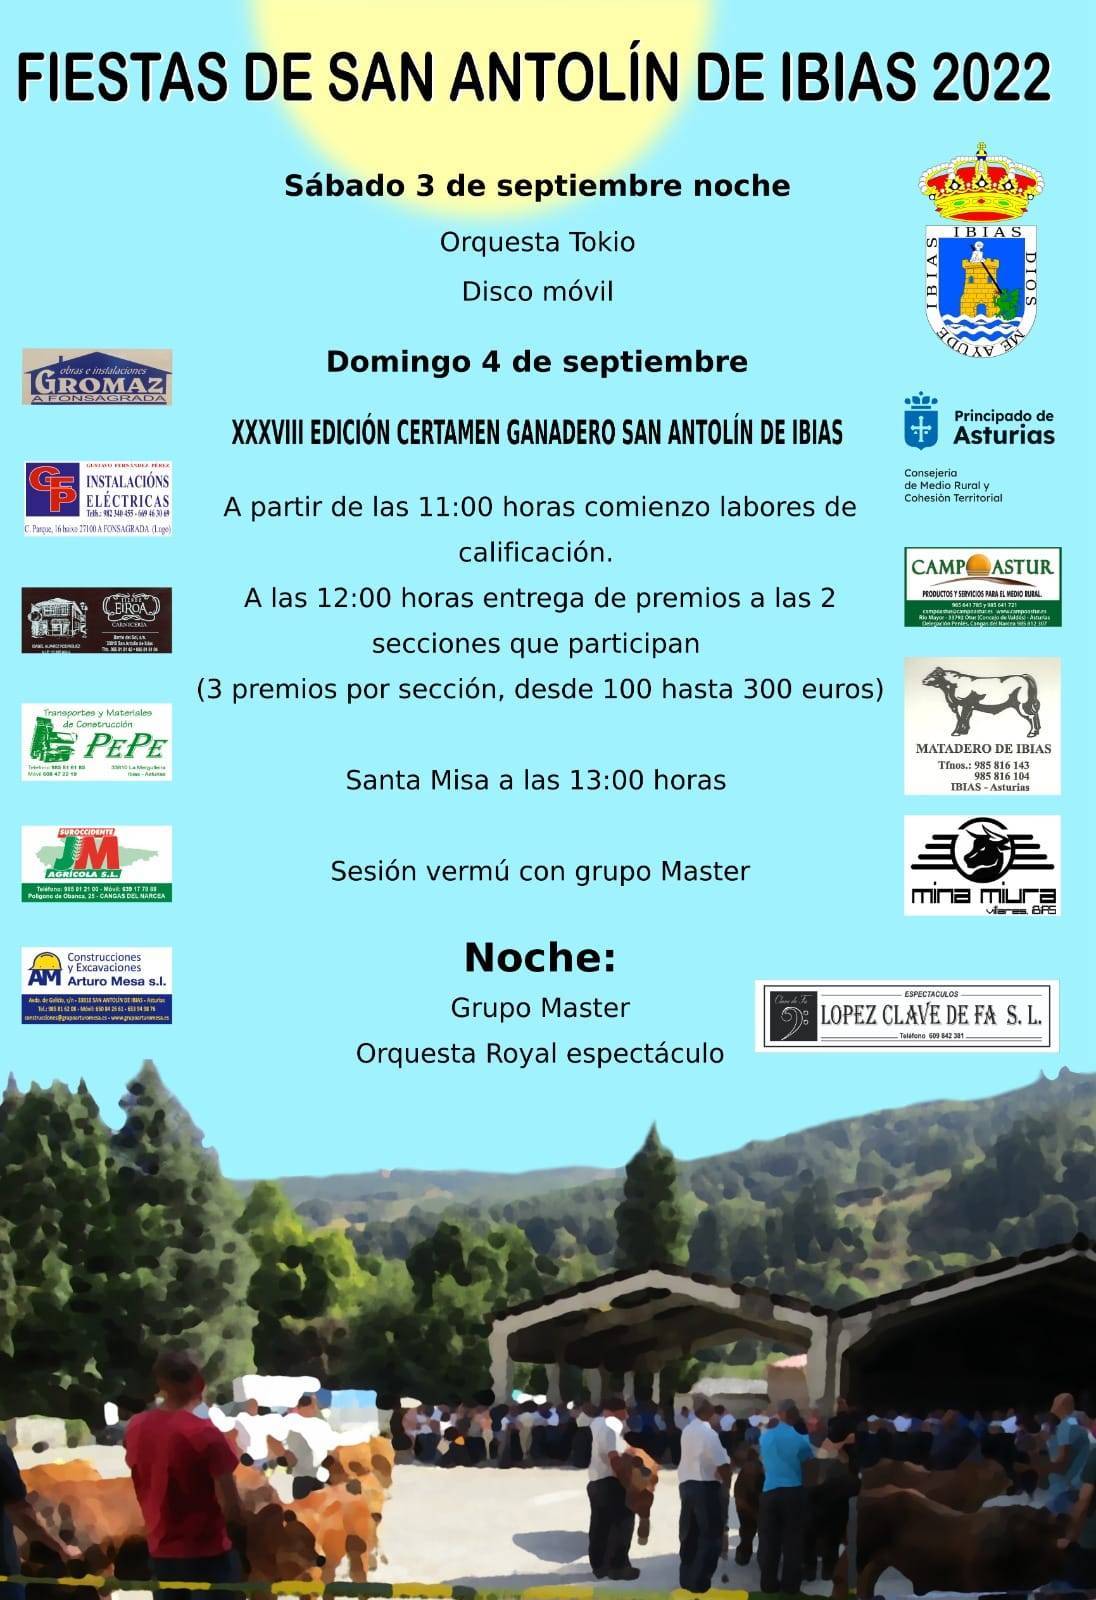 Fiestas de San Antolín (2022) - Ibias (Asturias)